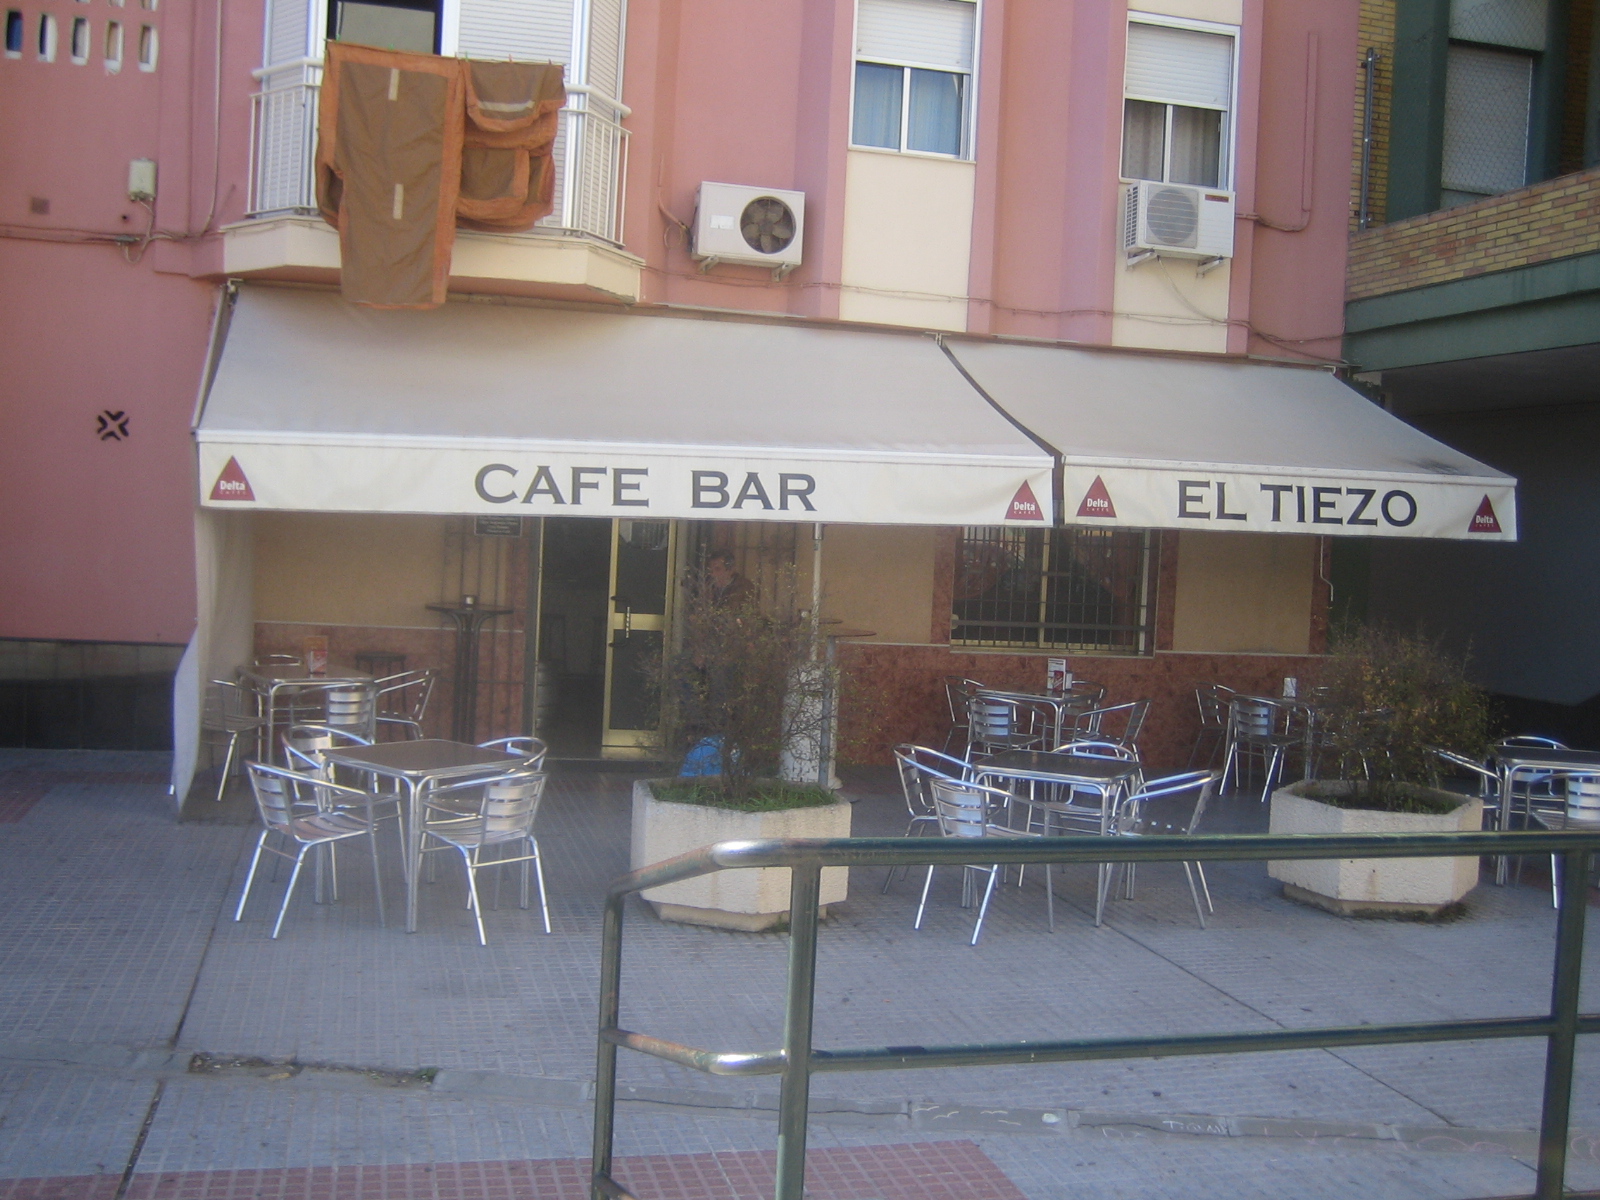 CAFÉ BAR "EL TIEZO"